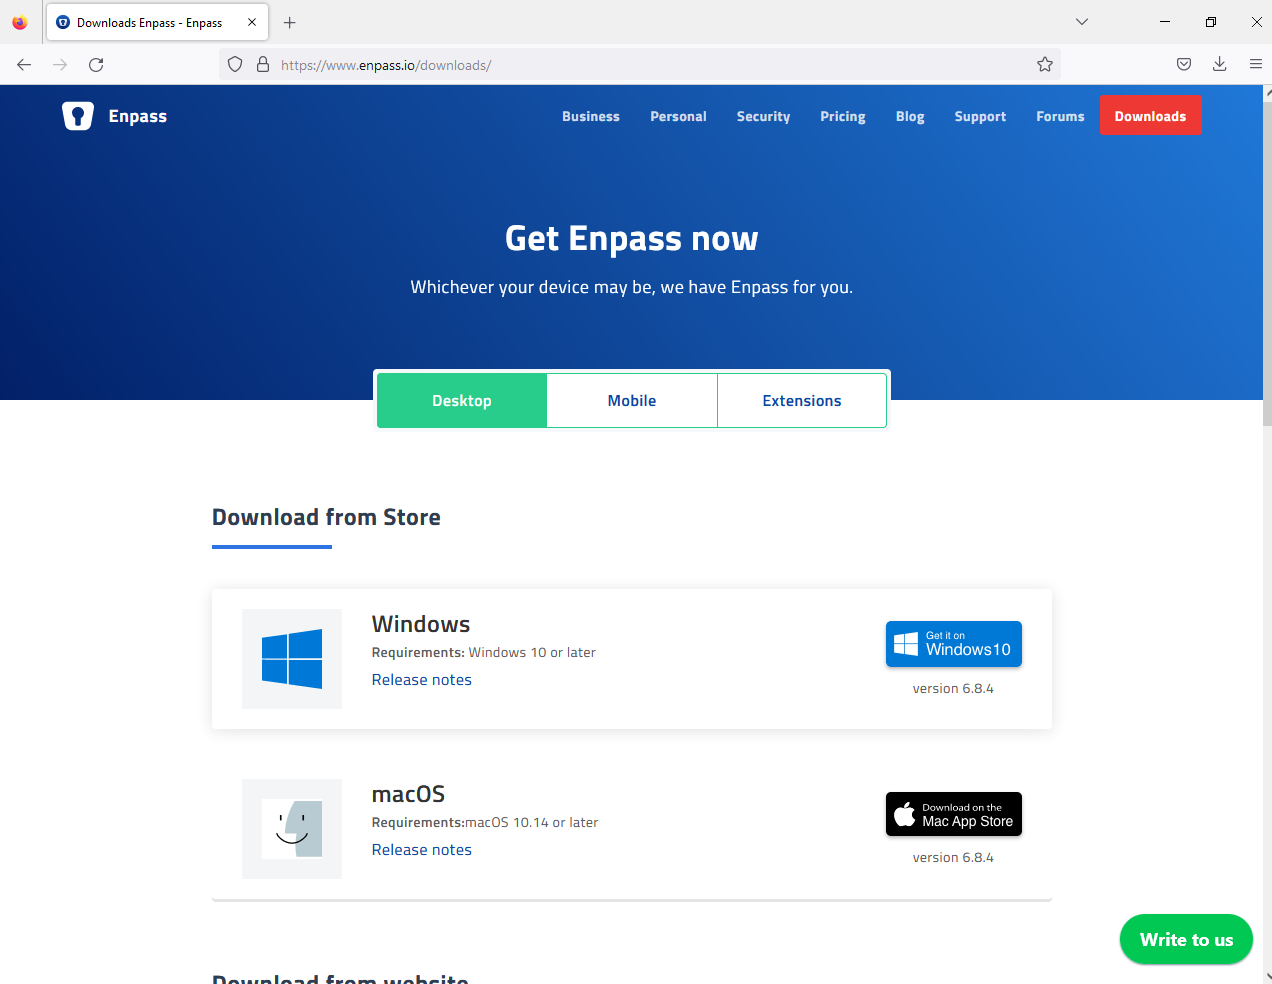 Enpass-Website-Download-Selction